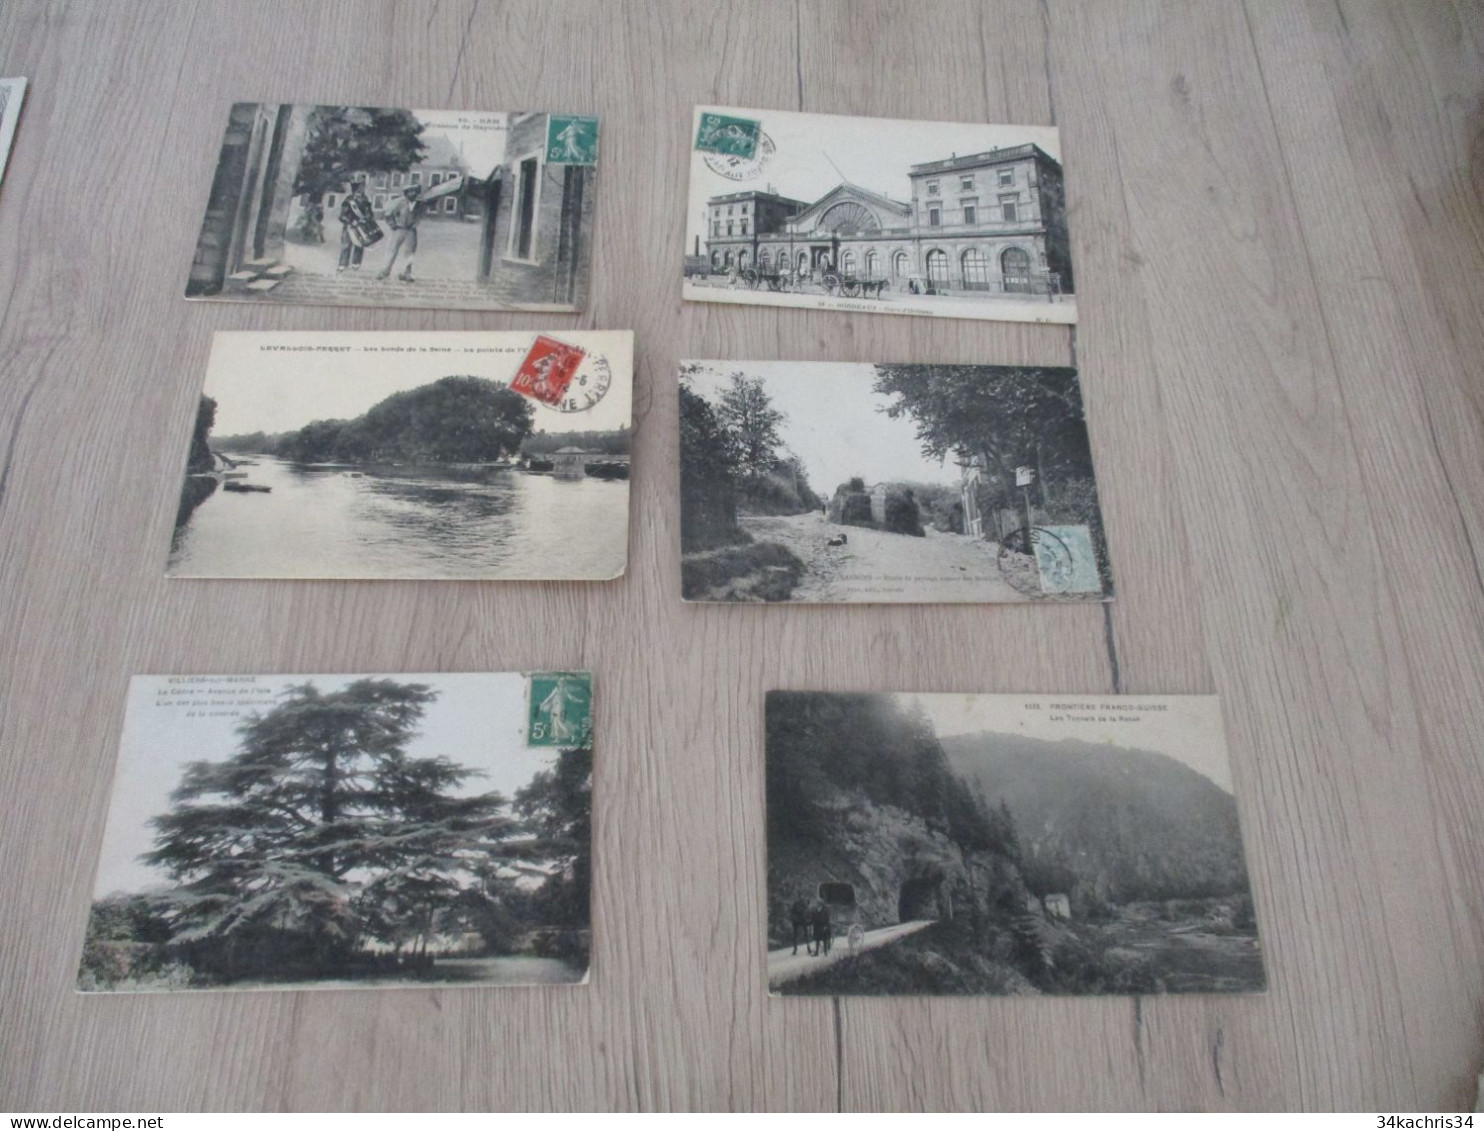 N°3 déstockage collection énorme CPA cartes postales 100 CPA différentes petites et moyennes cartes pas de drouille